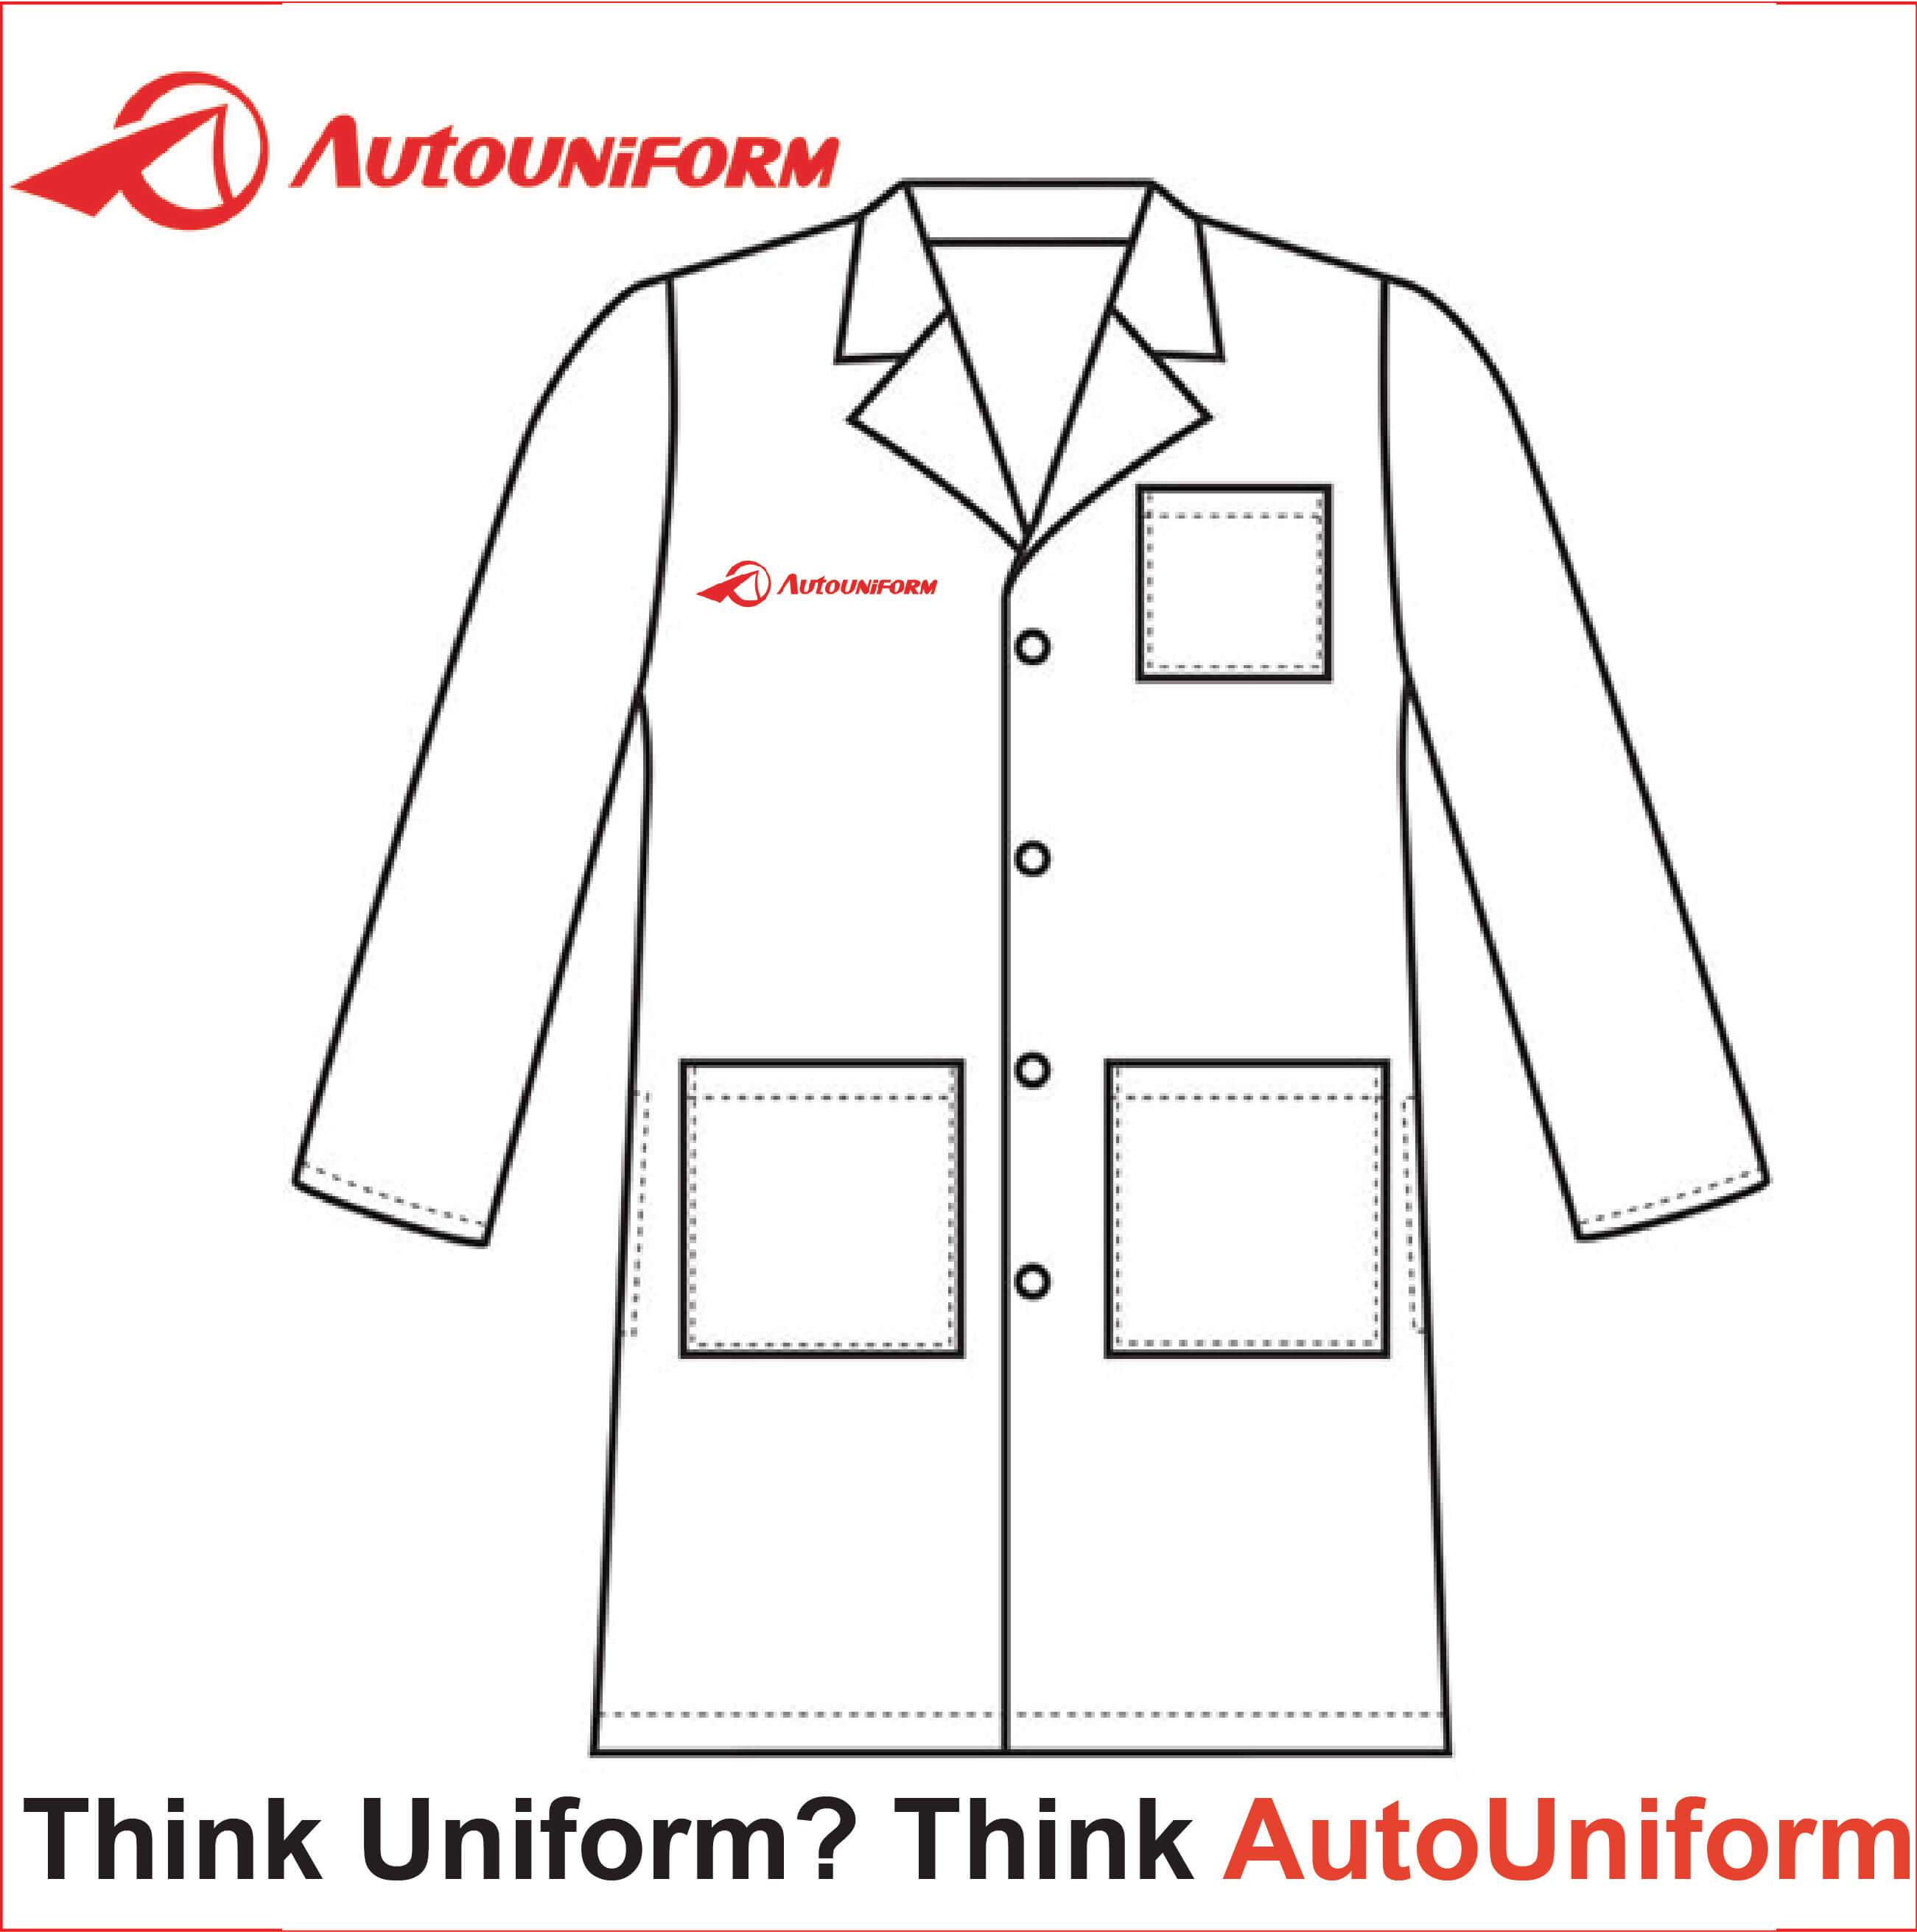 AutoUniform.com – Autouniform.com